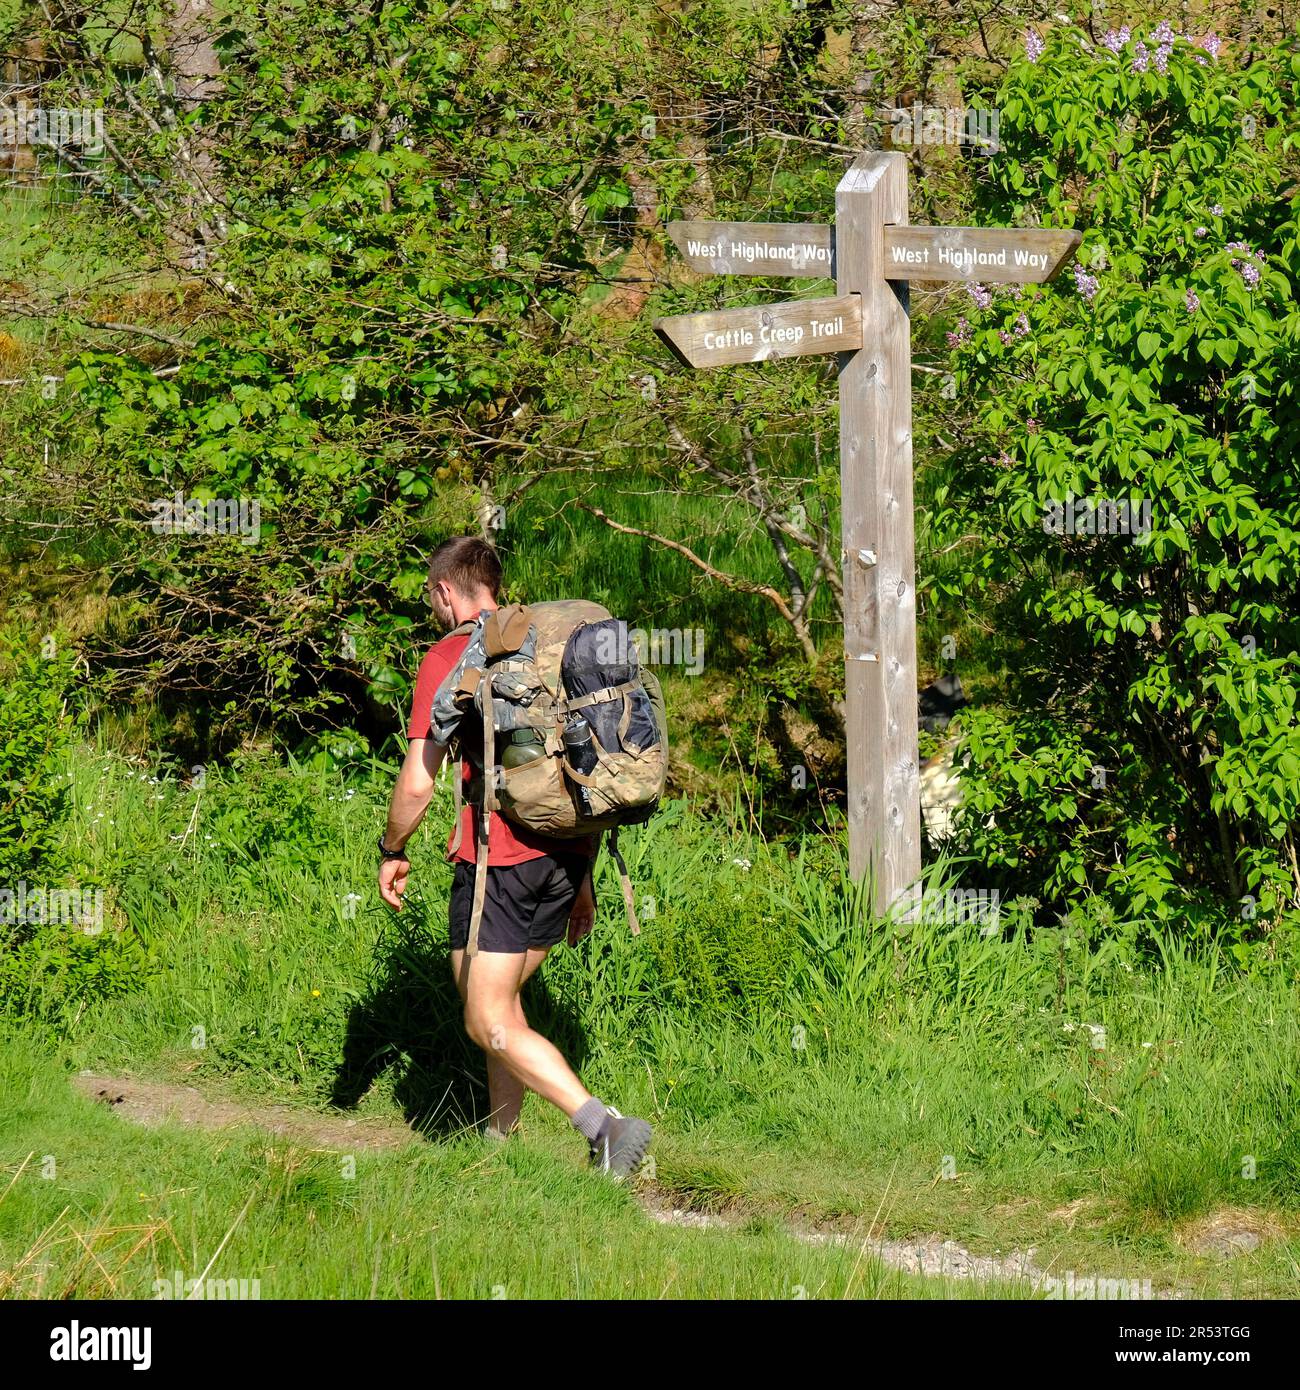 Walker passant un panneau Fingerpost pour le sentier Cattle Creep Trail et la West Highland Way, Tyndrum, Écosse Banque D'Images